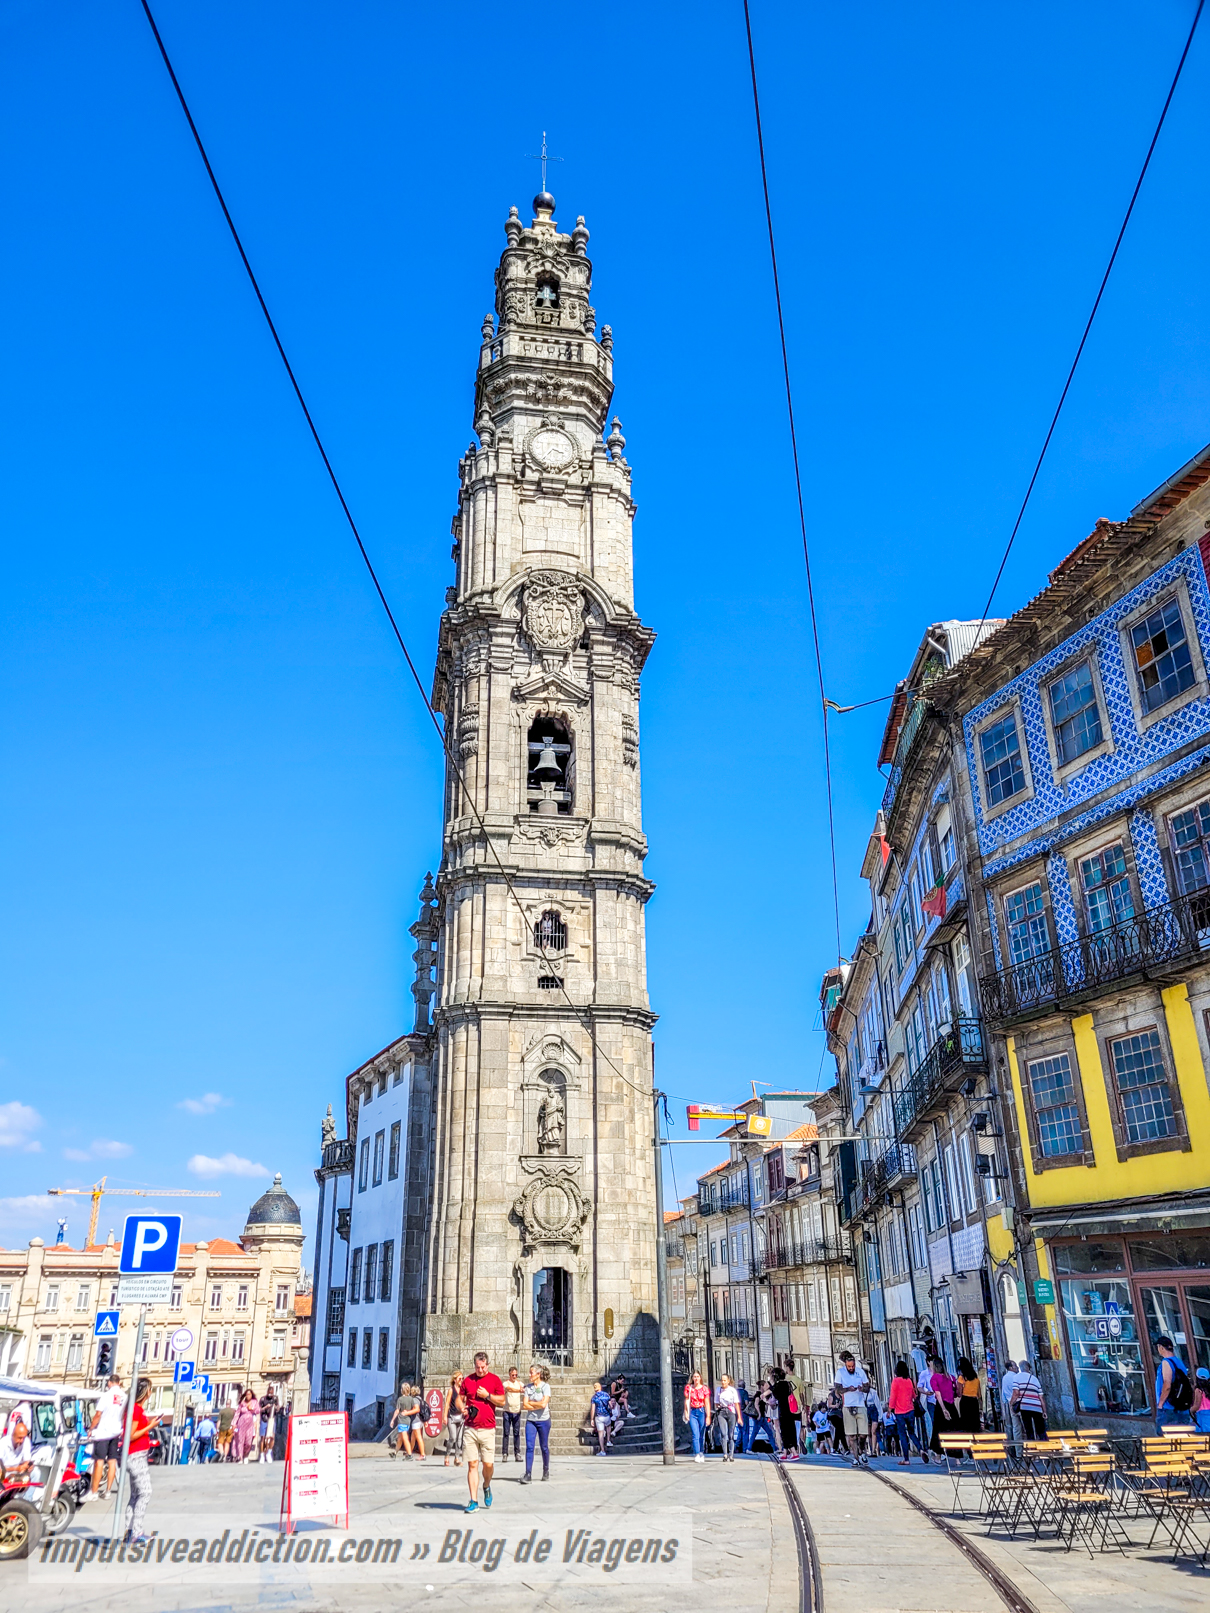 Clérigos Church and Tower in Porto